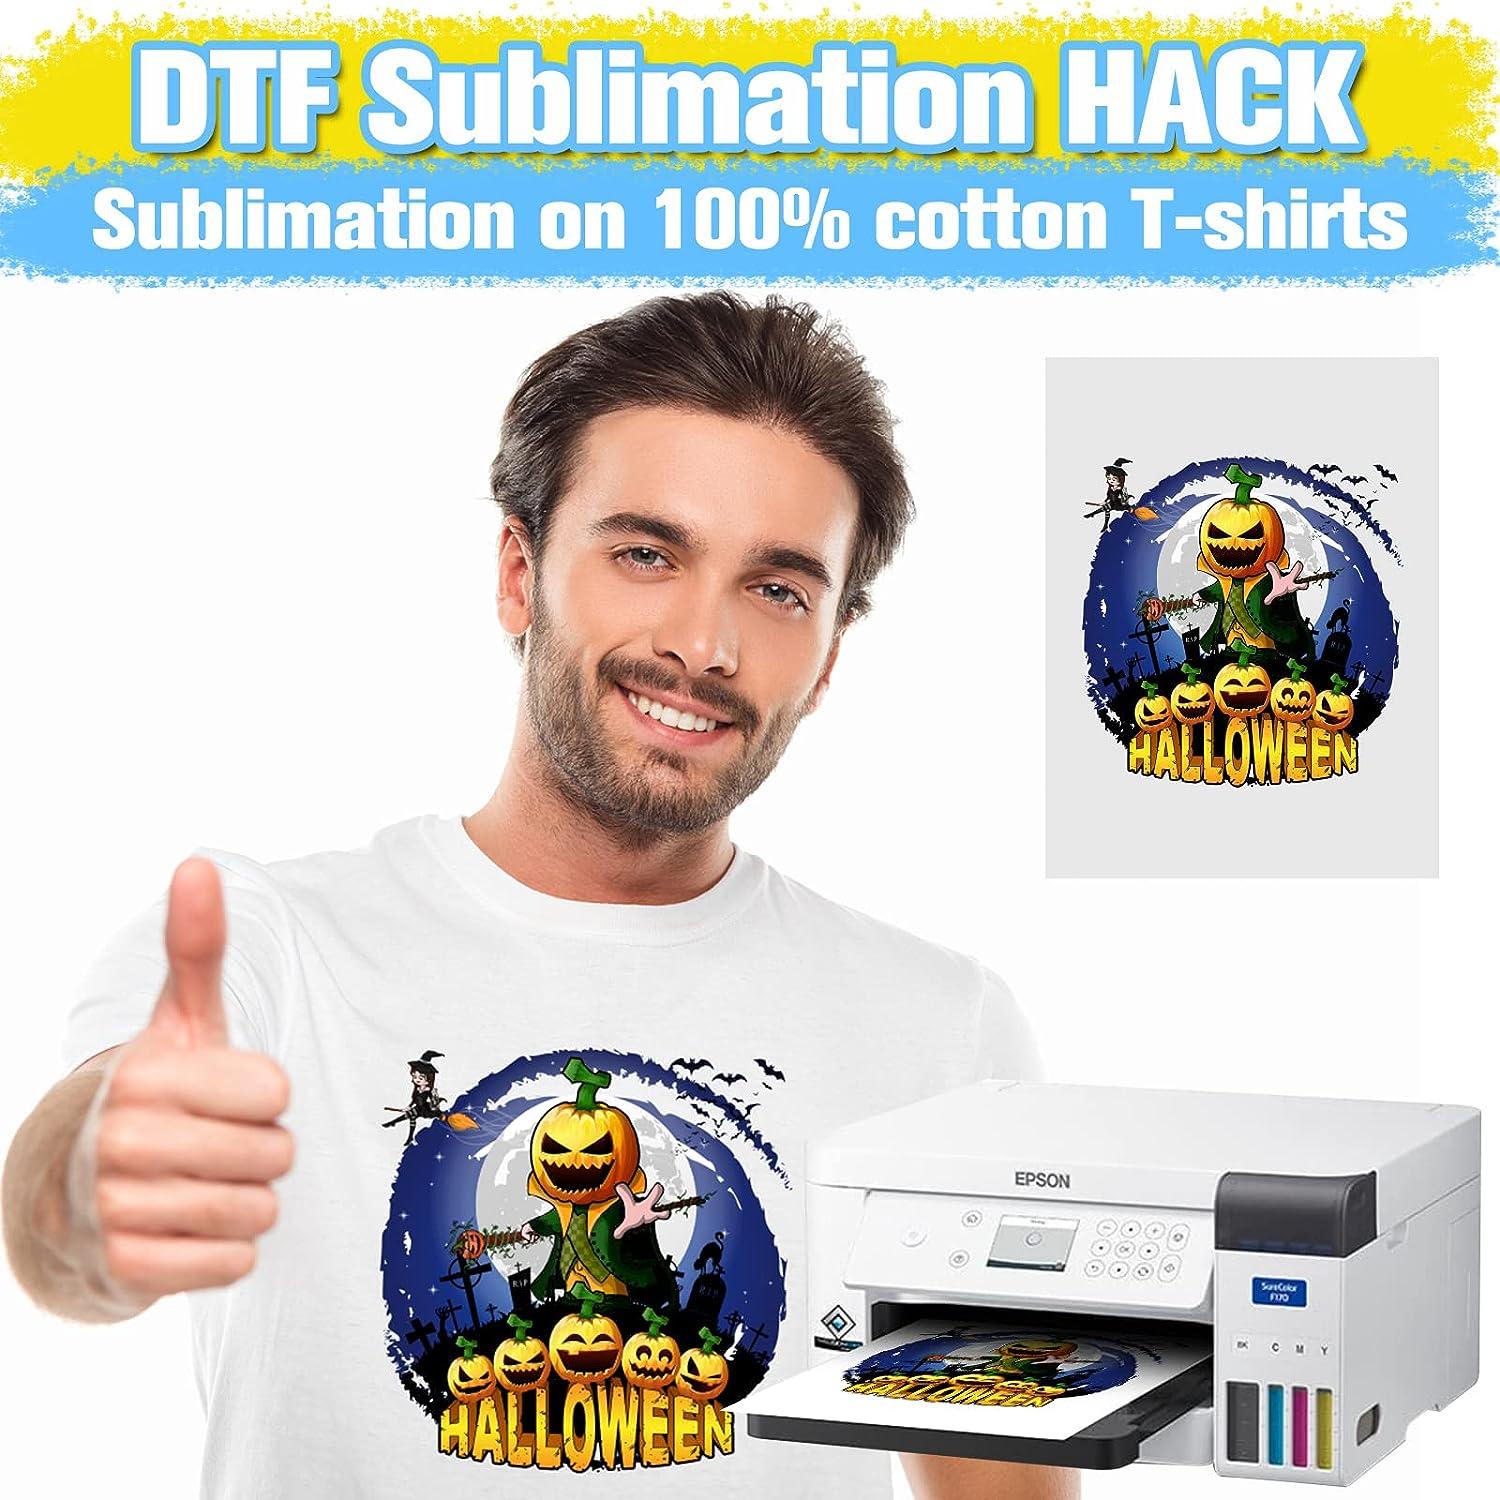 DTF SUBLIMATION HACK ON 100% COTTON DARK SHIRT 